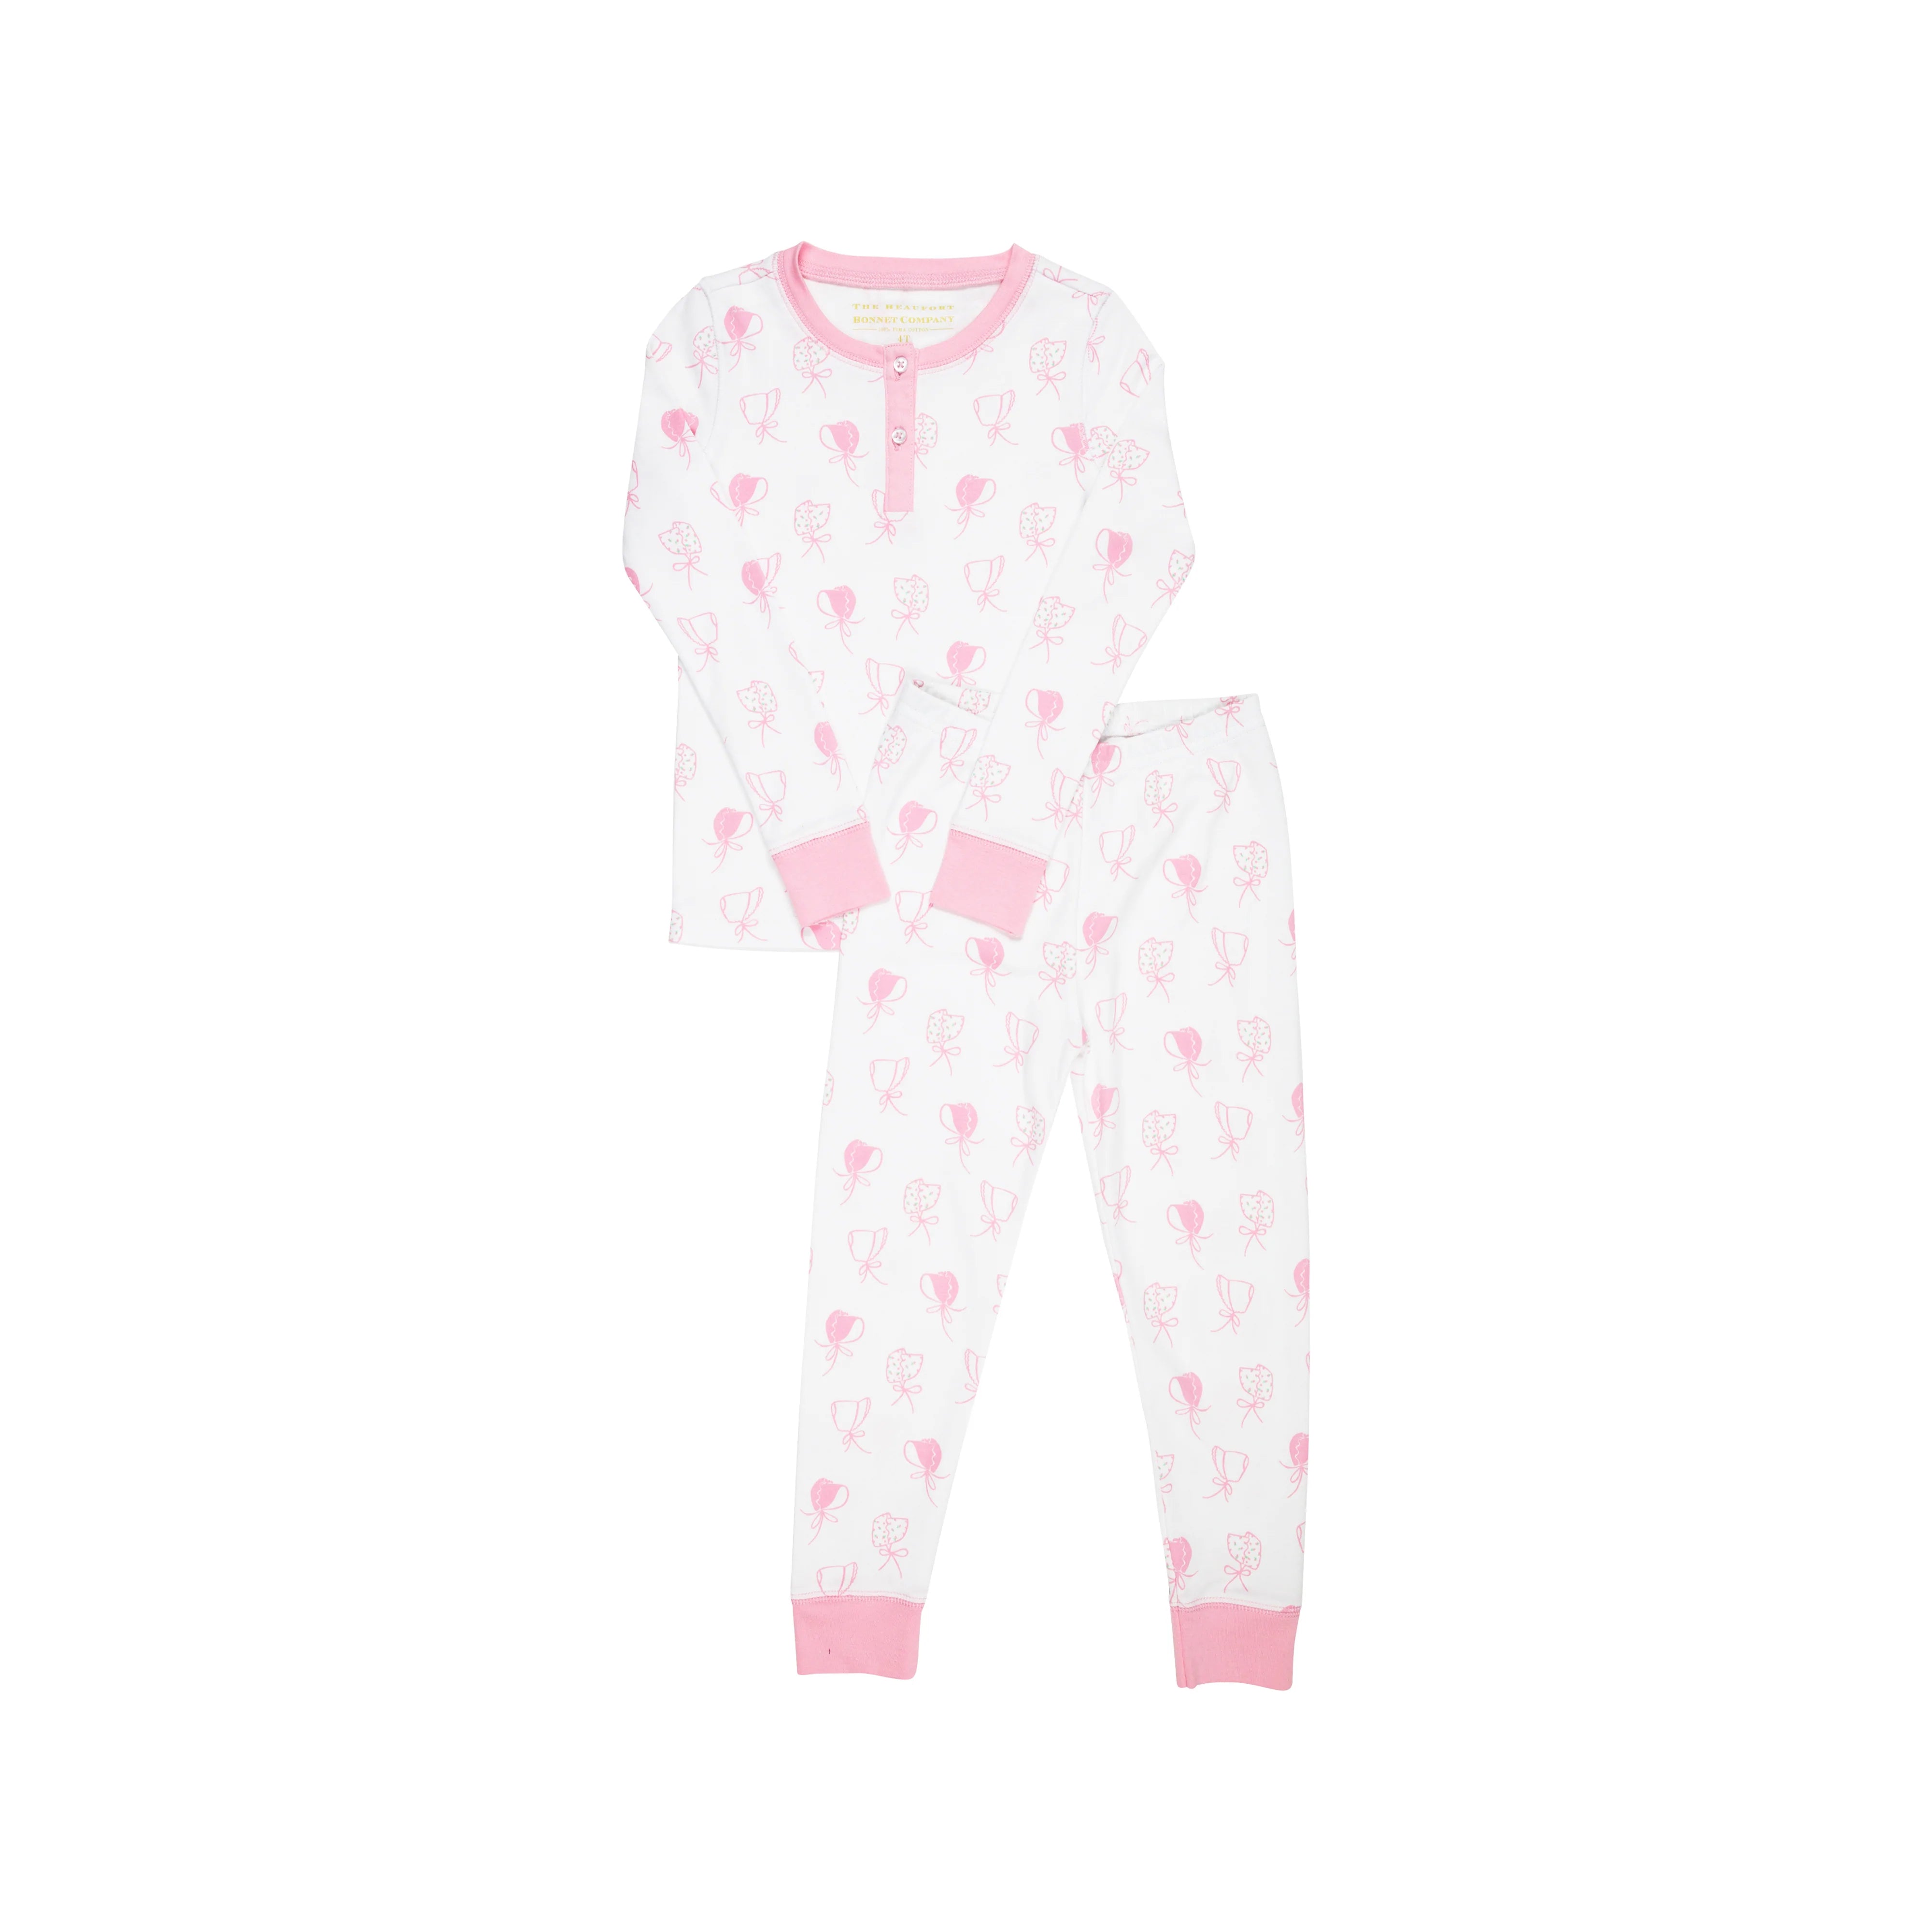 Sara Pajama Set in Light Pink Gingham